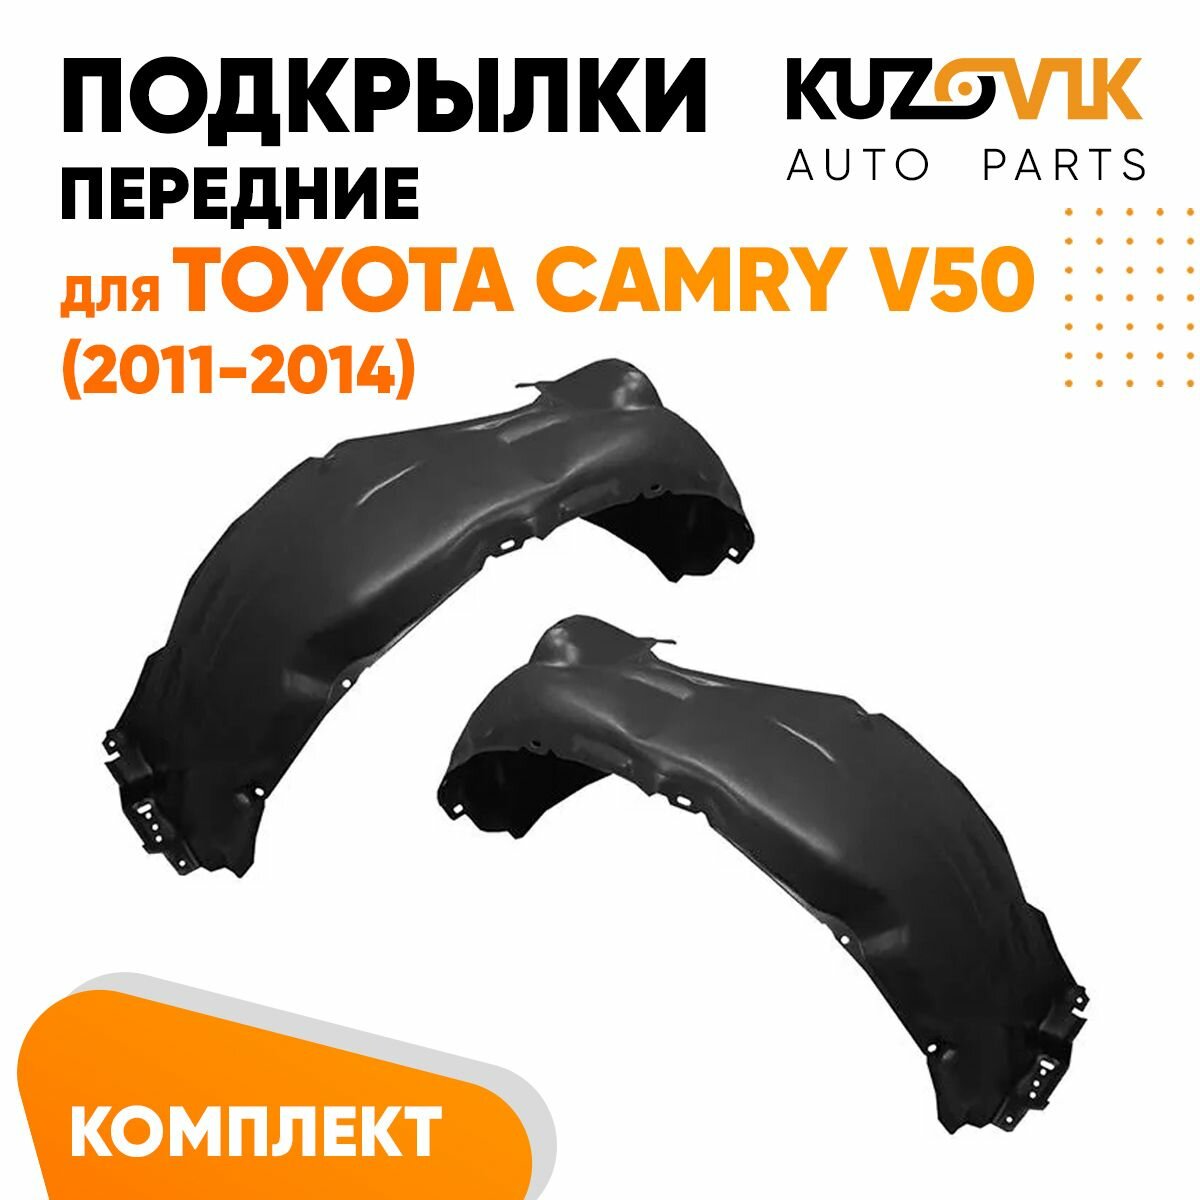 Подкрылки передние Toyota Camry V50 (2011-2014) 2 шт правый + левый